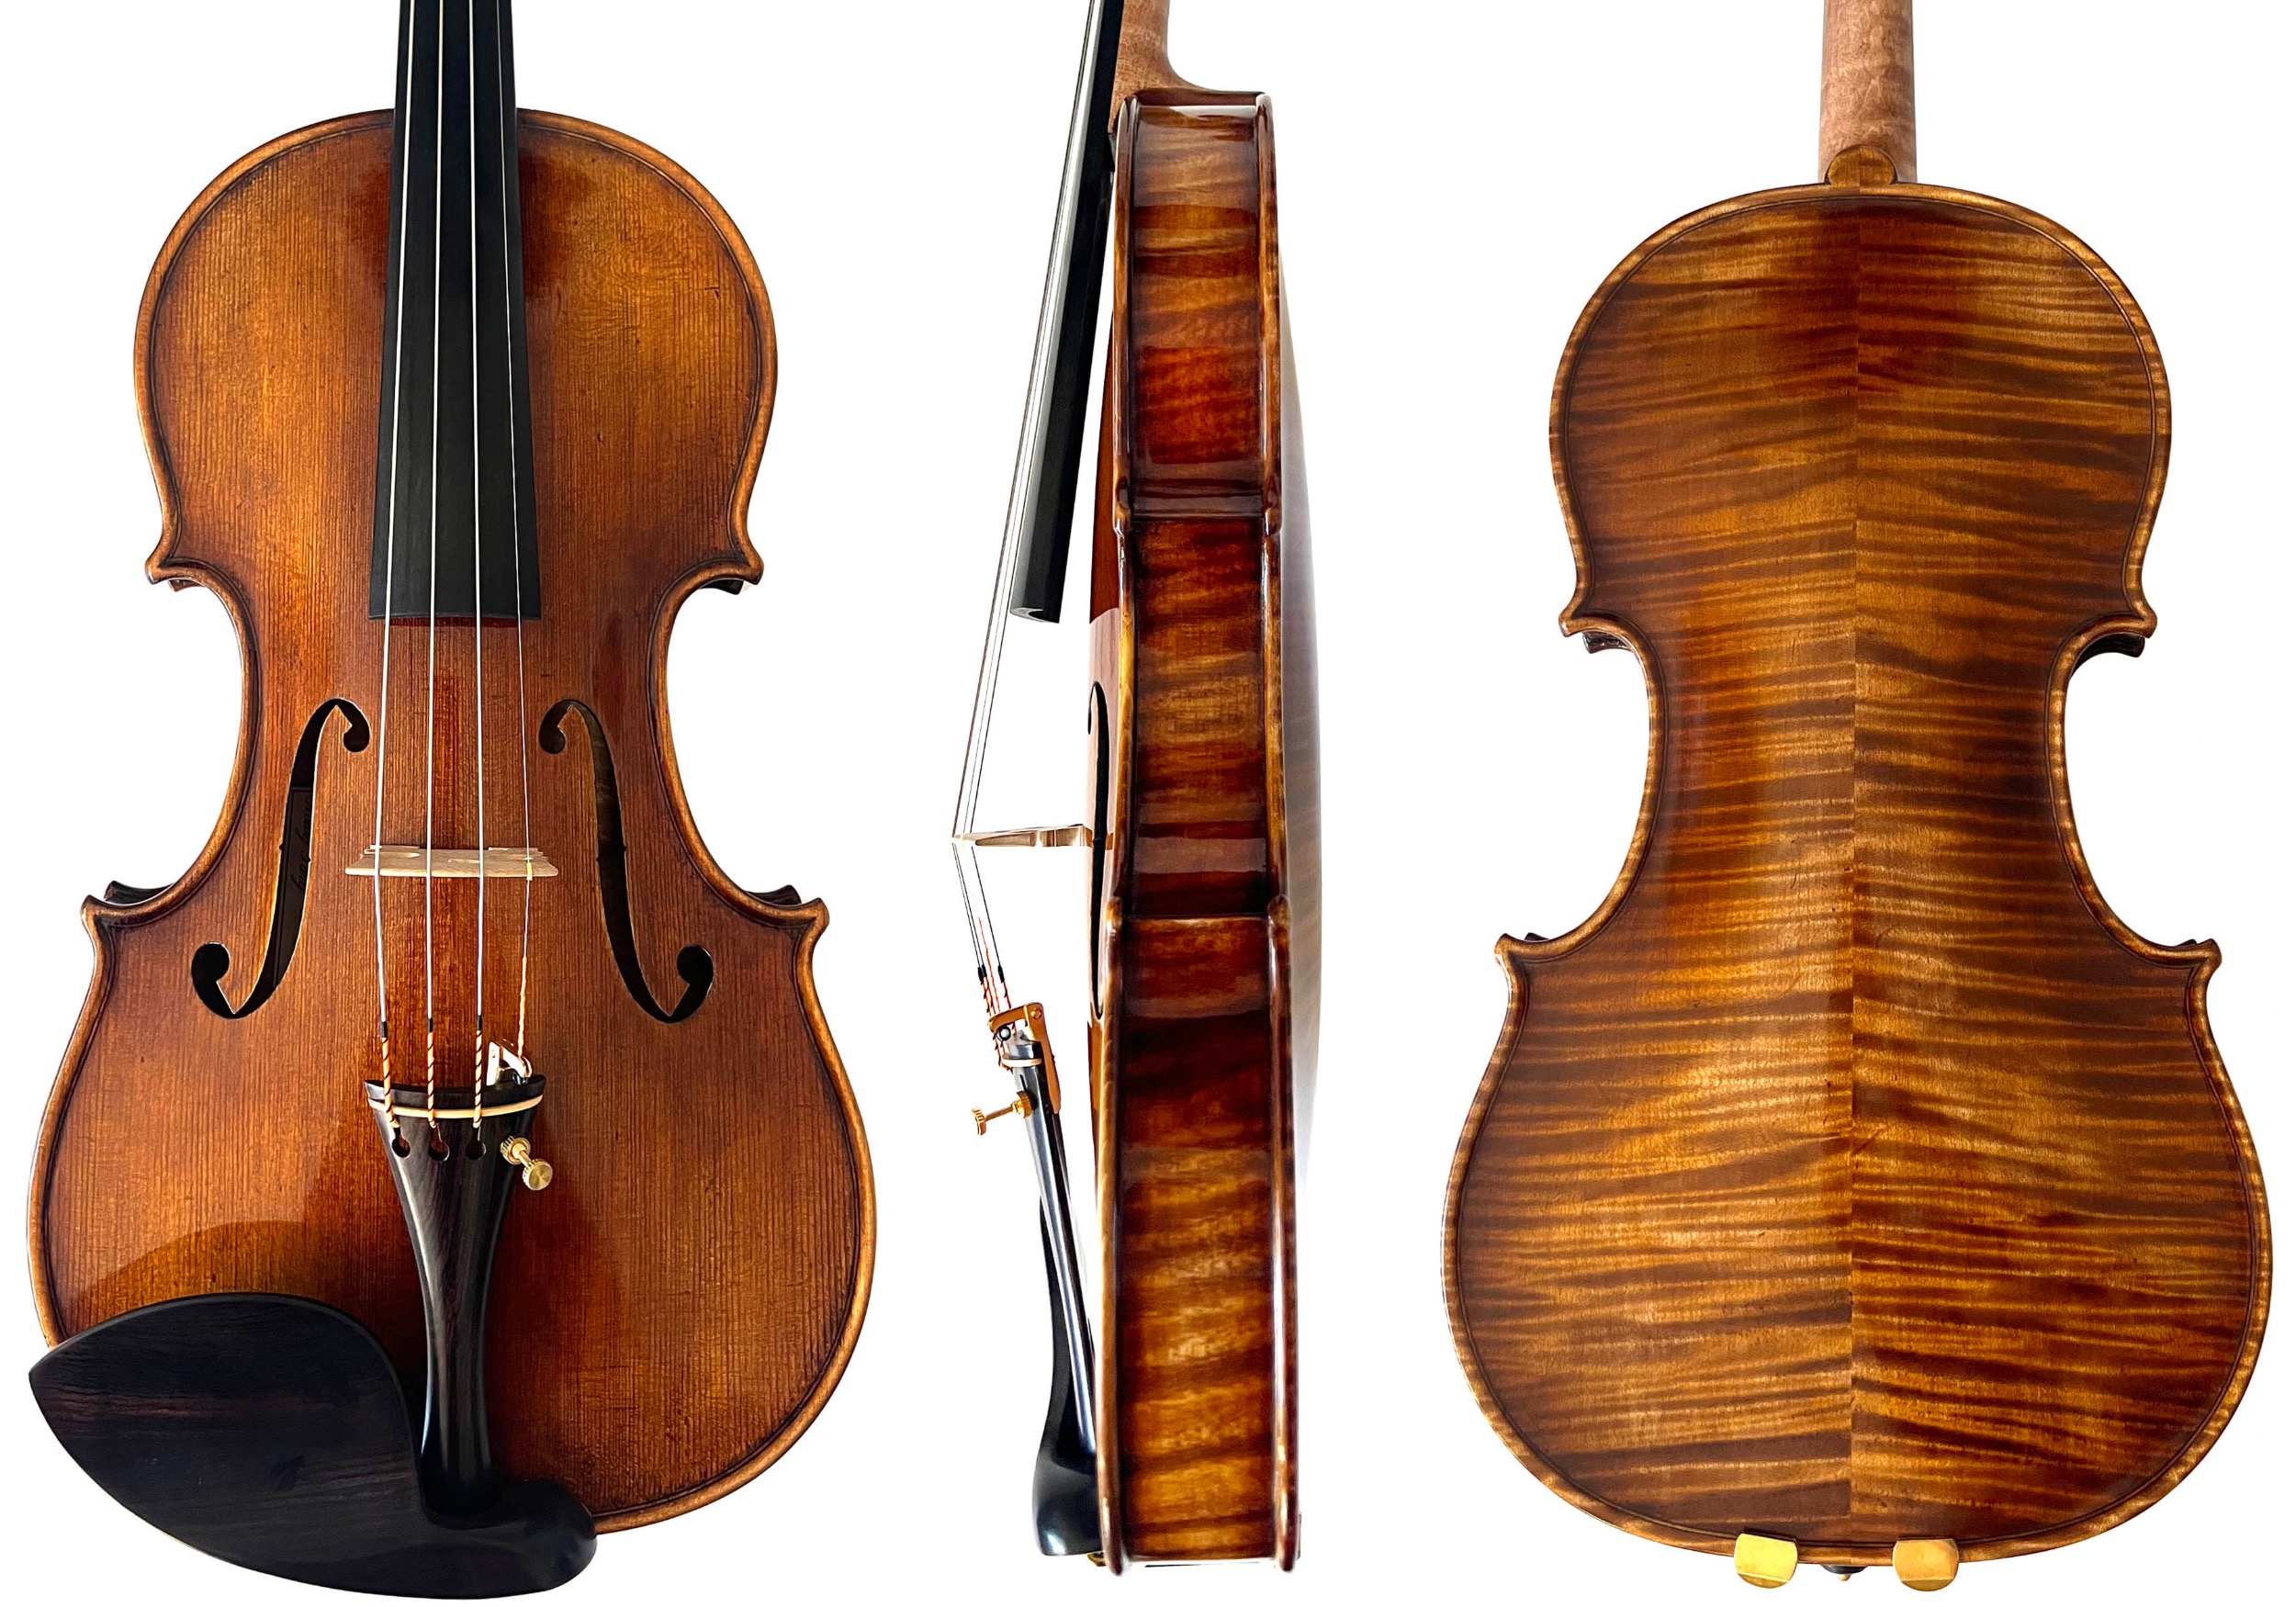 Kowalski Guarneri "Carrodus" 2023-1 violin front, side and back